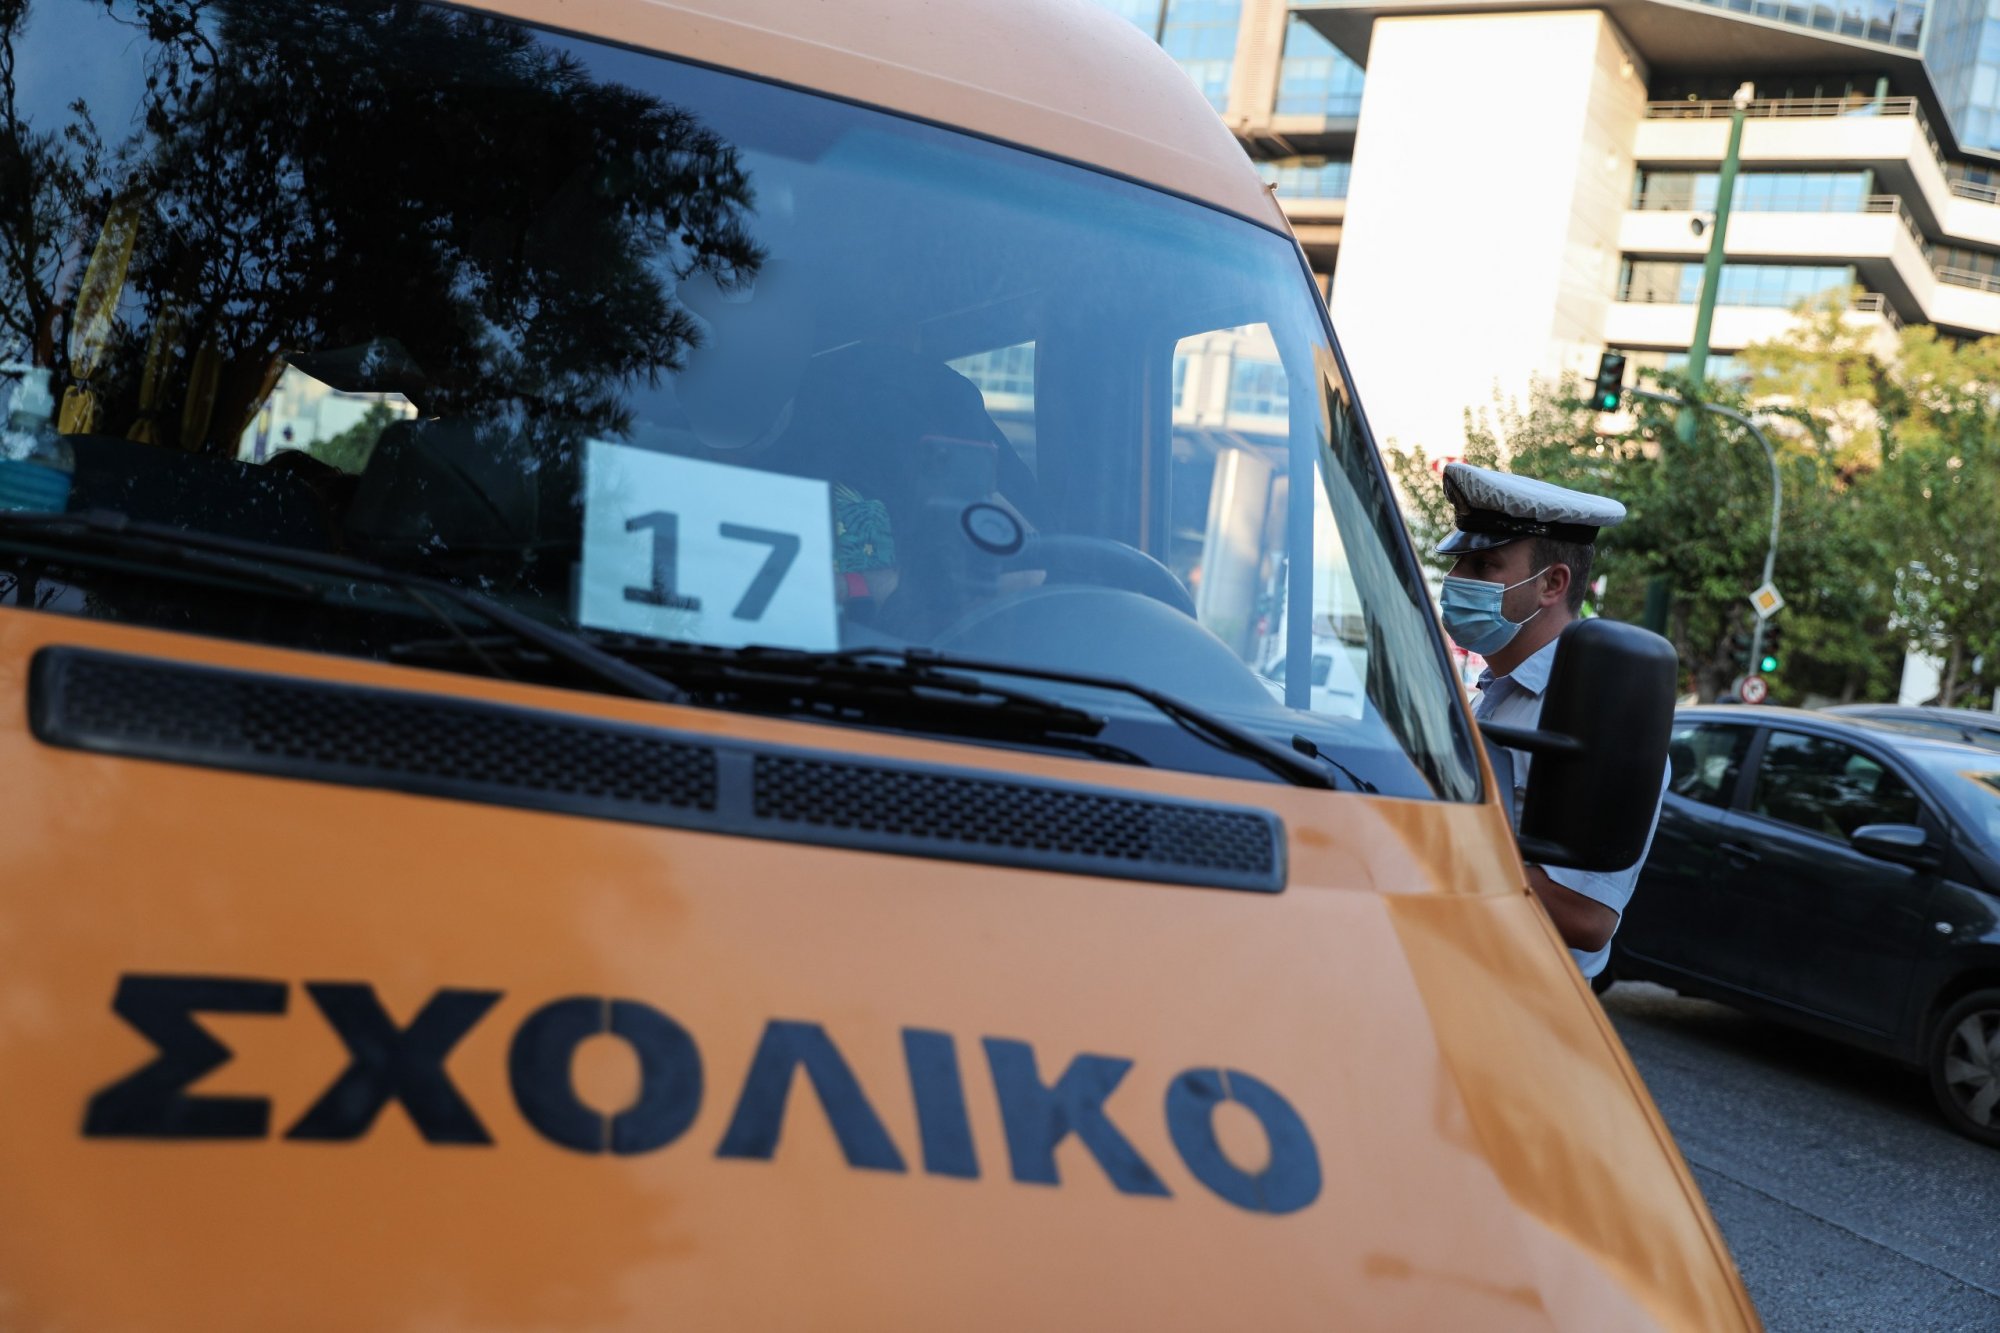 Συναγερμός στον Πειραιά - Σχολικό λεωφορείο συγκρούστηκε με αυτοκίνητο